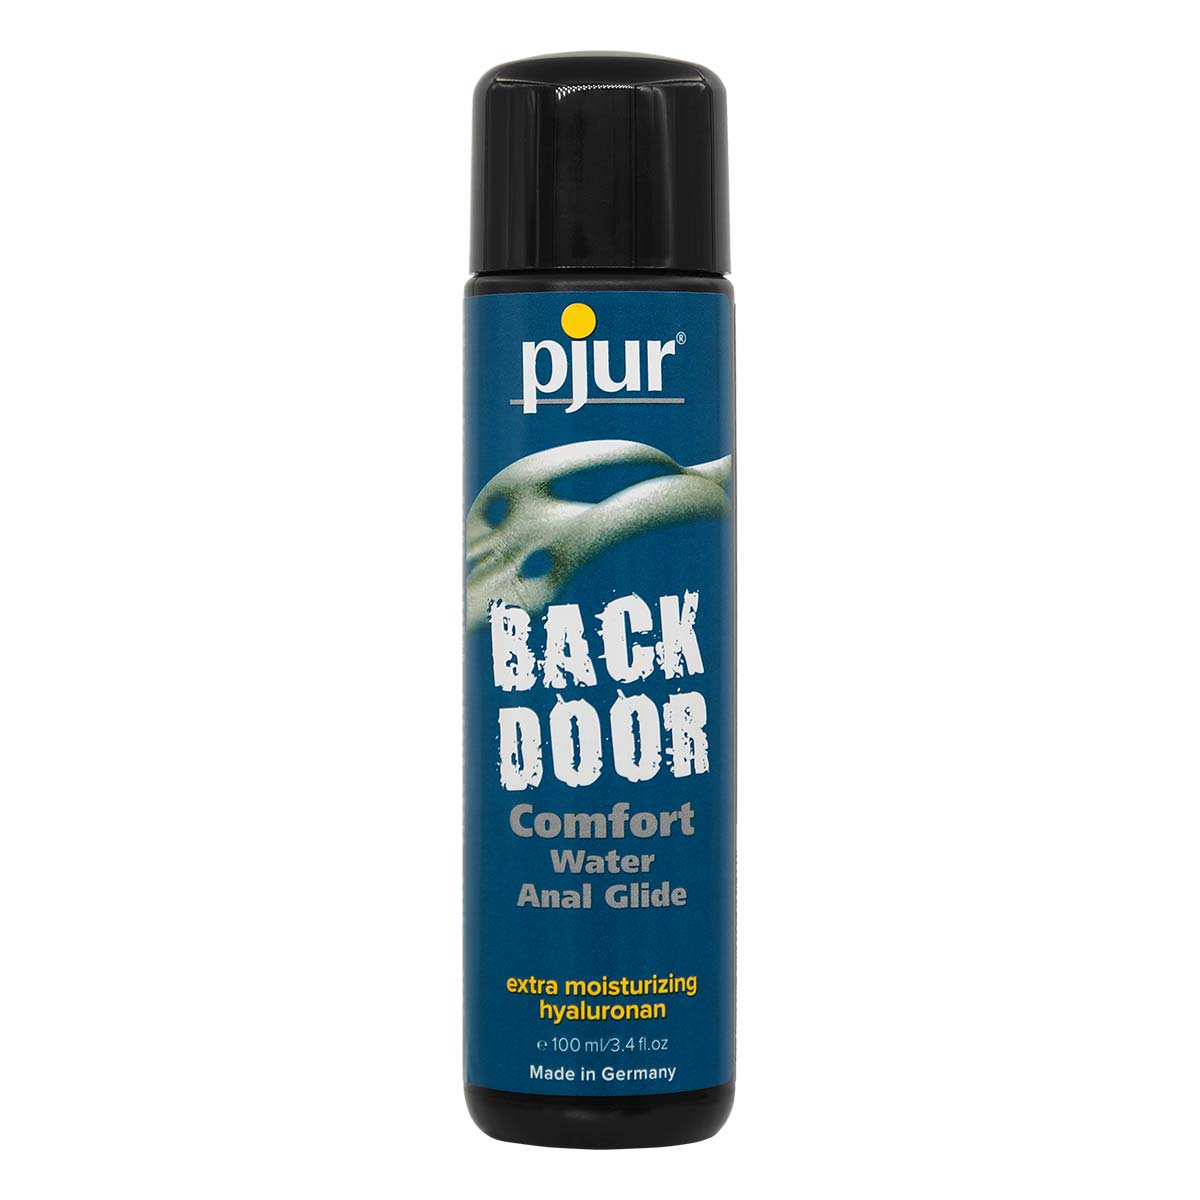 pjur BACK DOOR COMFORT Water Anal Glide 100ml Water-based Lubricant-p_2